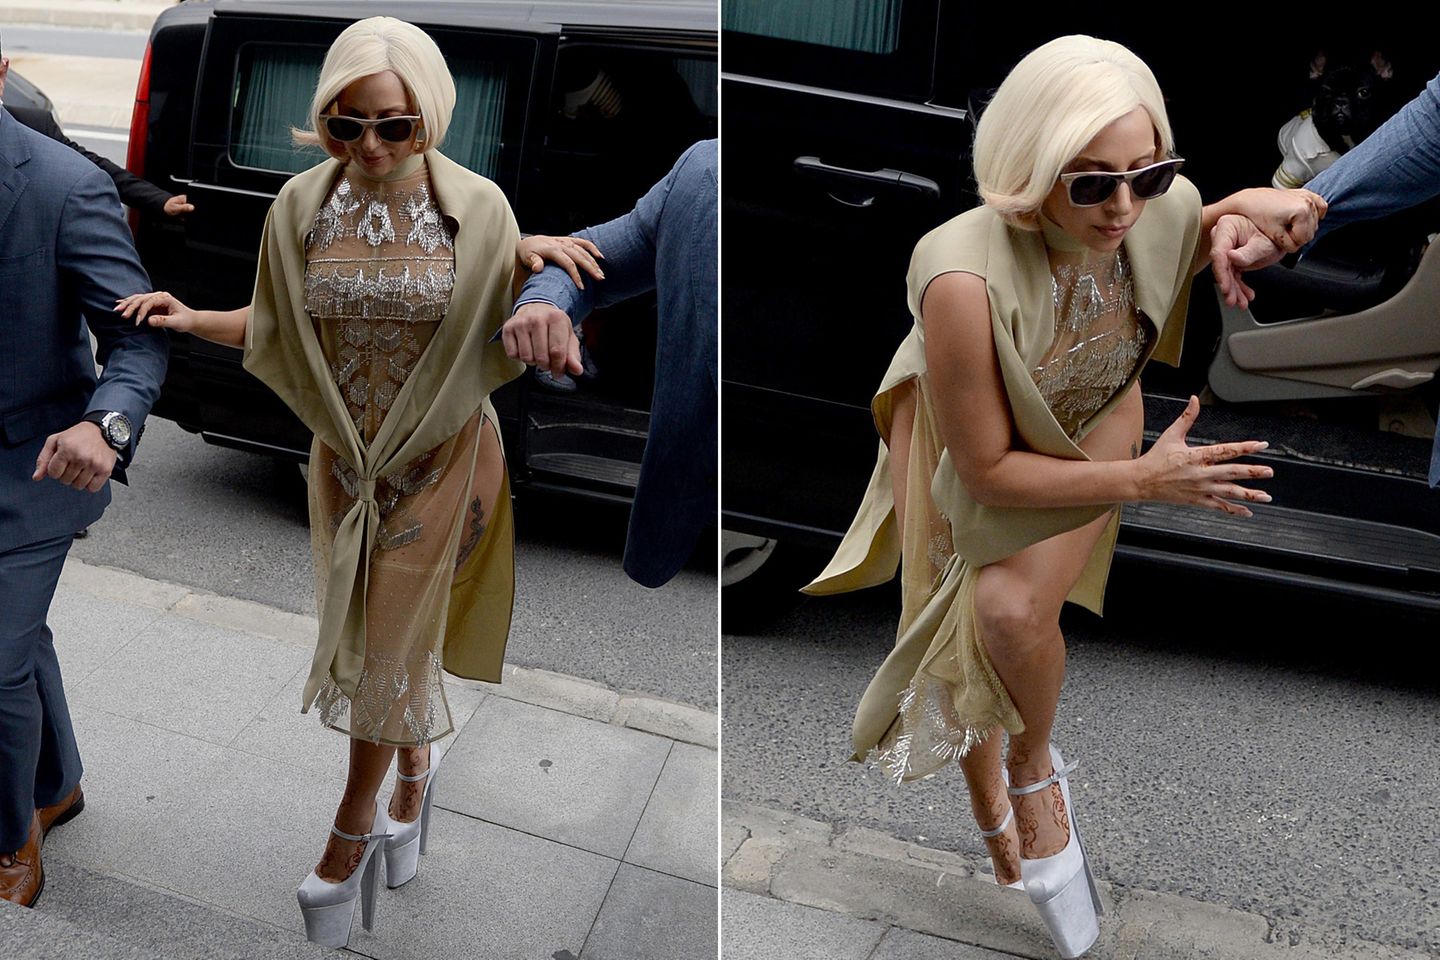 Aus dem Auto steigt Lady Gaga noch sehr elegant aus, doch keinen Schritt später strauchelt sie und droht schmerzhaft zu stürzen, aber ihr Bodyguard federt sie rechtzeitig ab. Ob es an ihren Schuhen lag oder an der Unebenheit des Asphalts, konnte nicht geklärt werden.